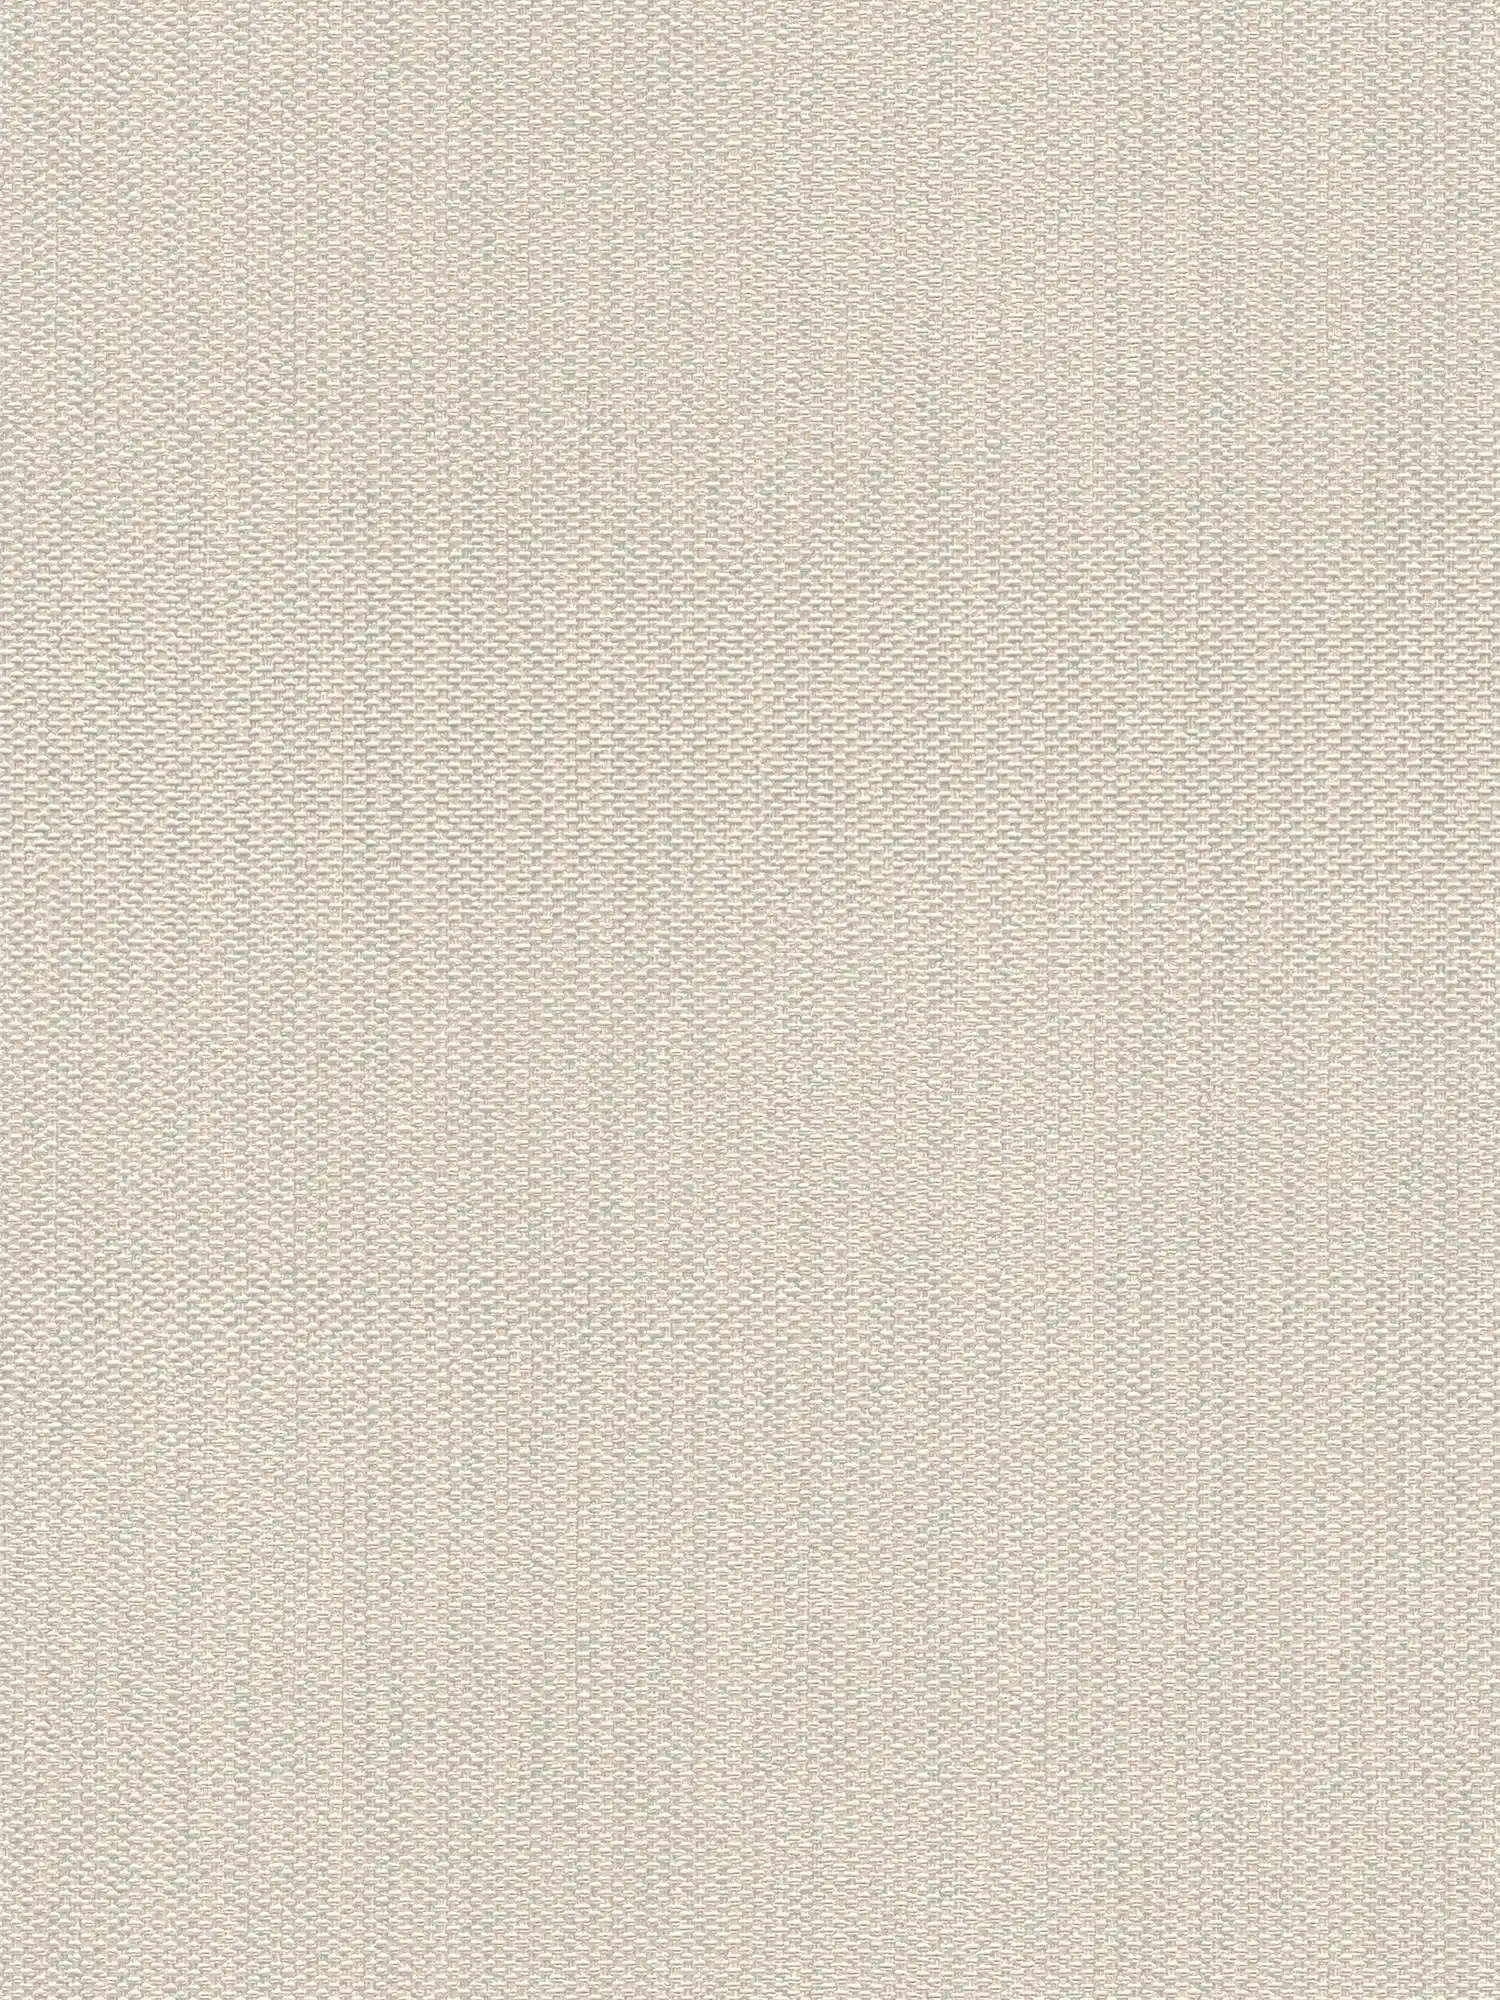 Vliestapete in Textiloptik – Creme, Grau
